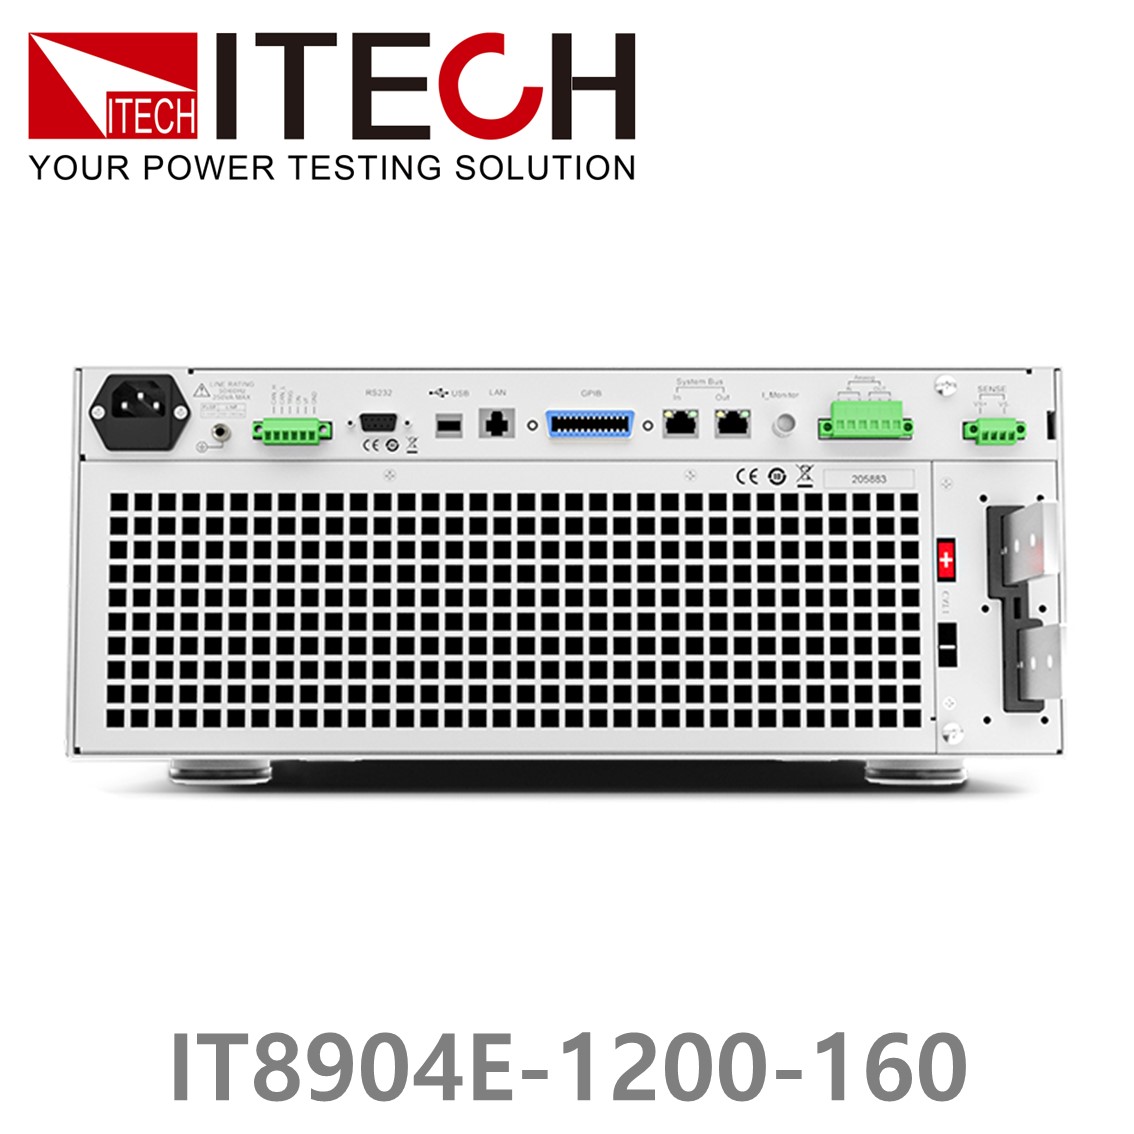 [ ITECH ] IT8904E-1200-160  고성능 고전력 DC 전자로드 1200V/160A/4kW (4U)